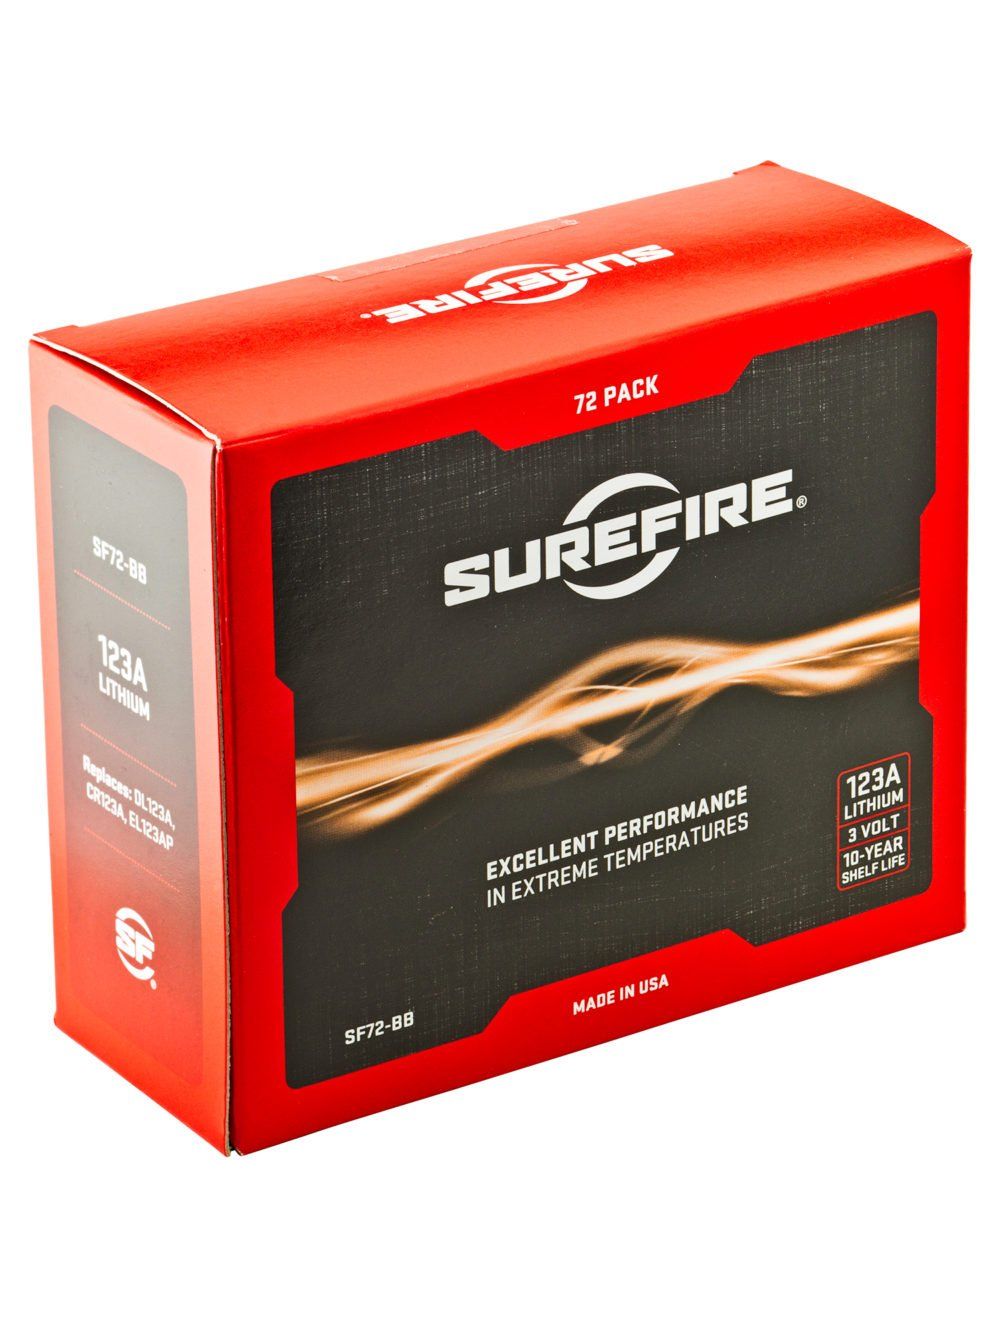 Surefire 123A Lithium Batteries